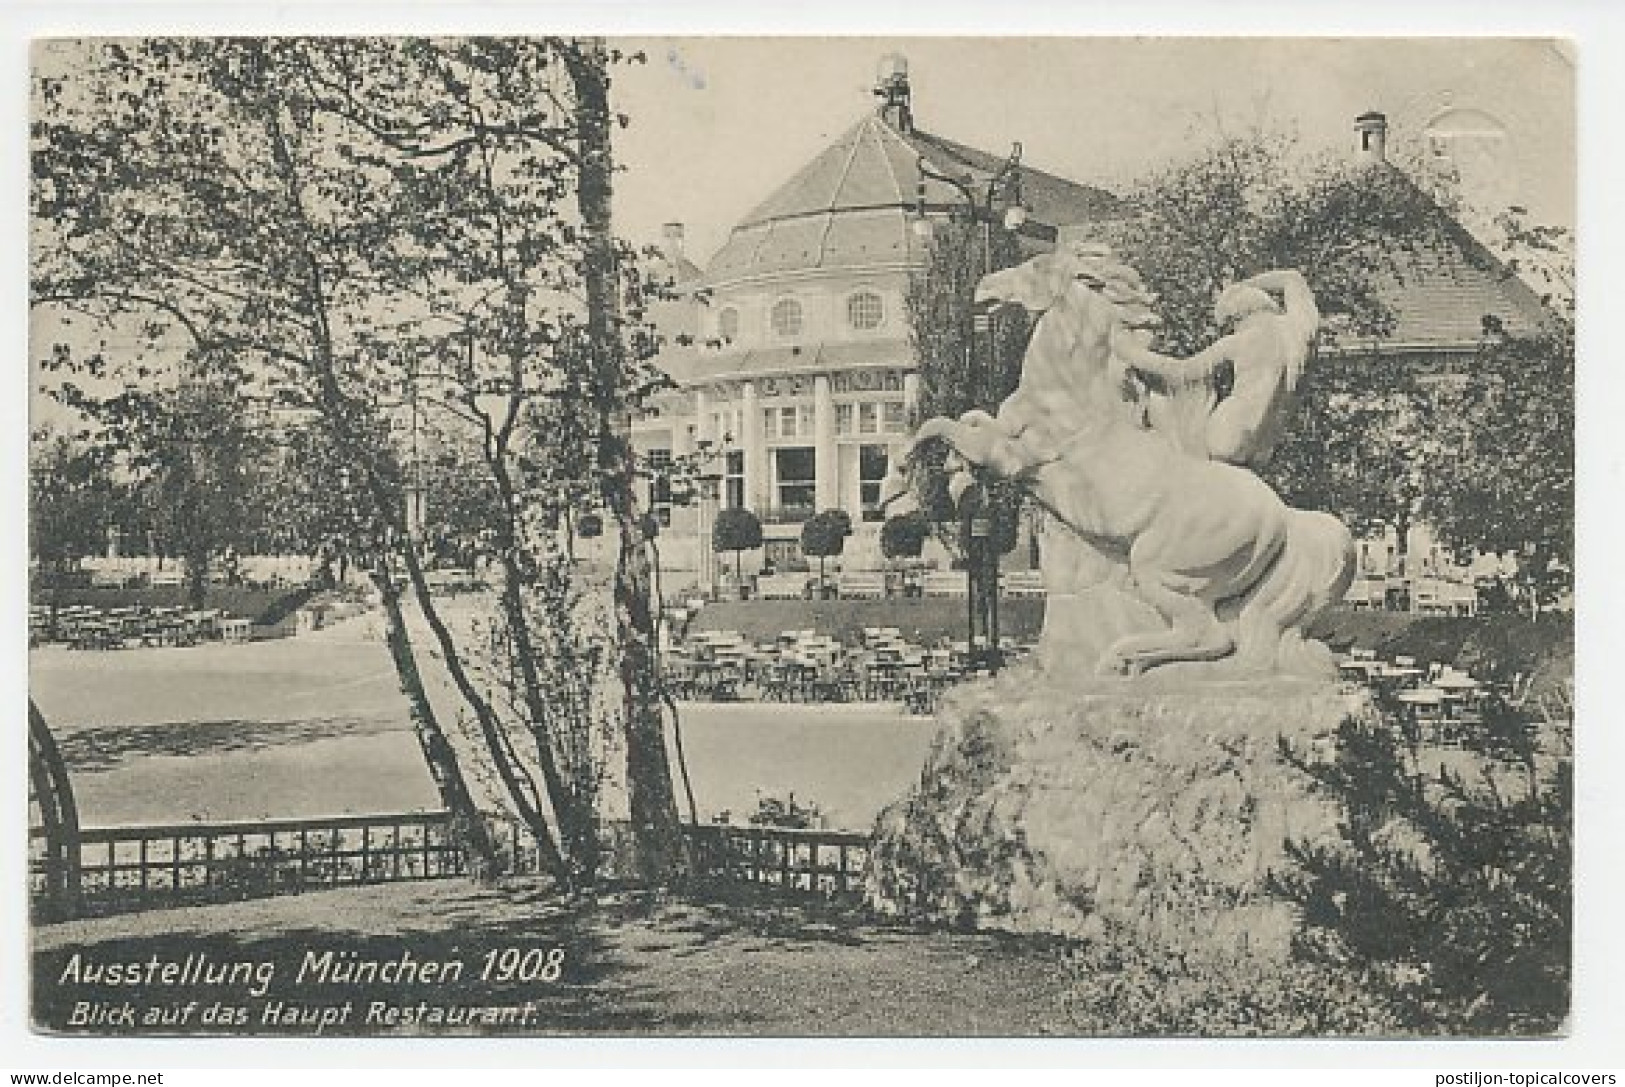 Postal Stationery Bayern 1908 Exhibition Munchen - Restaurant - Horse - Skulpturen